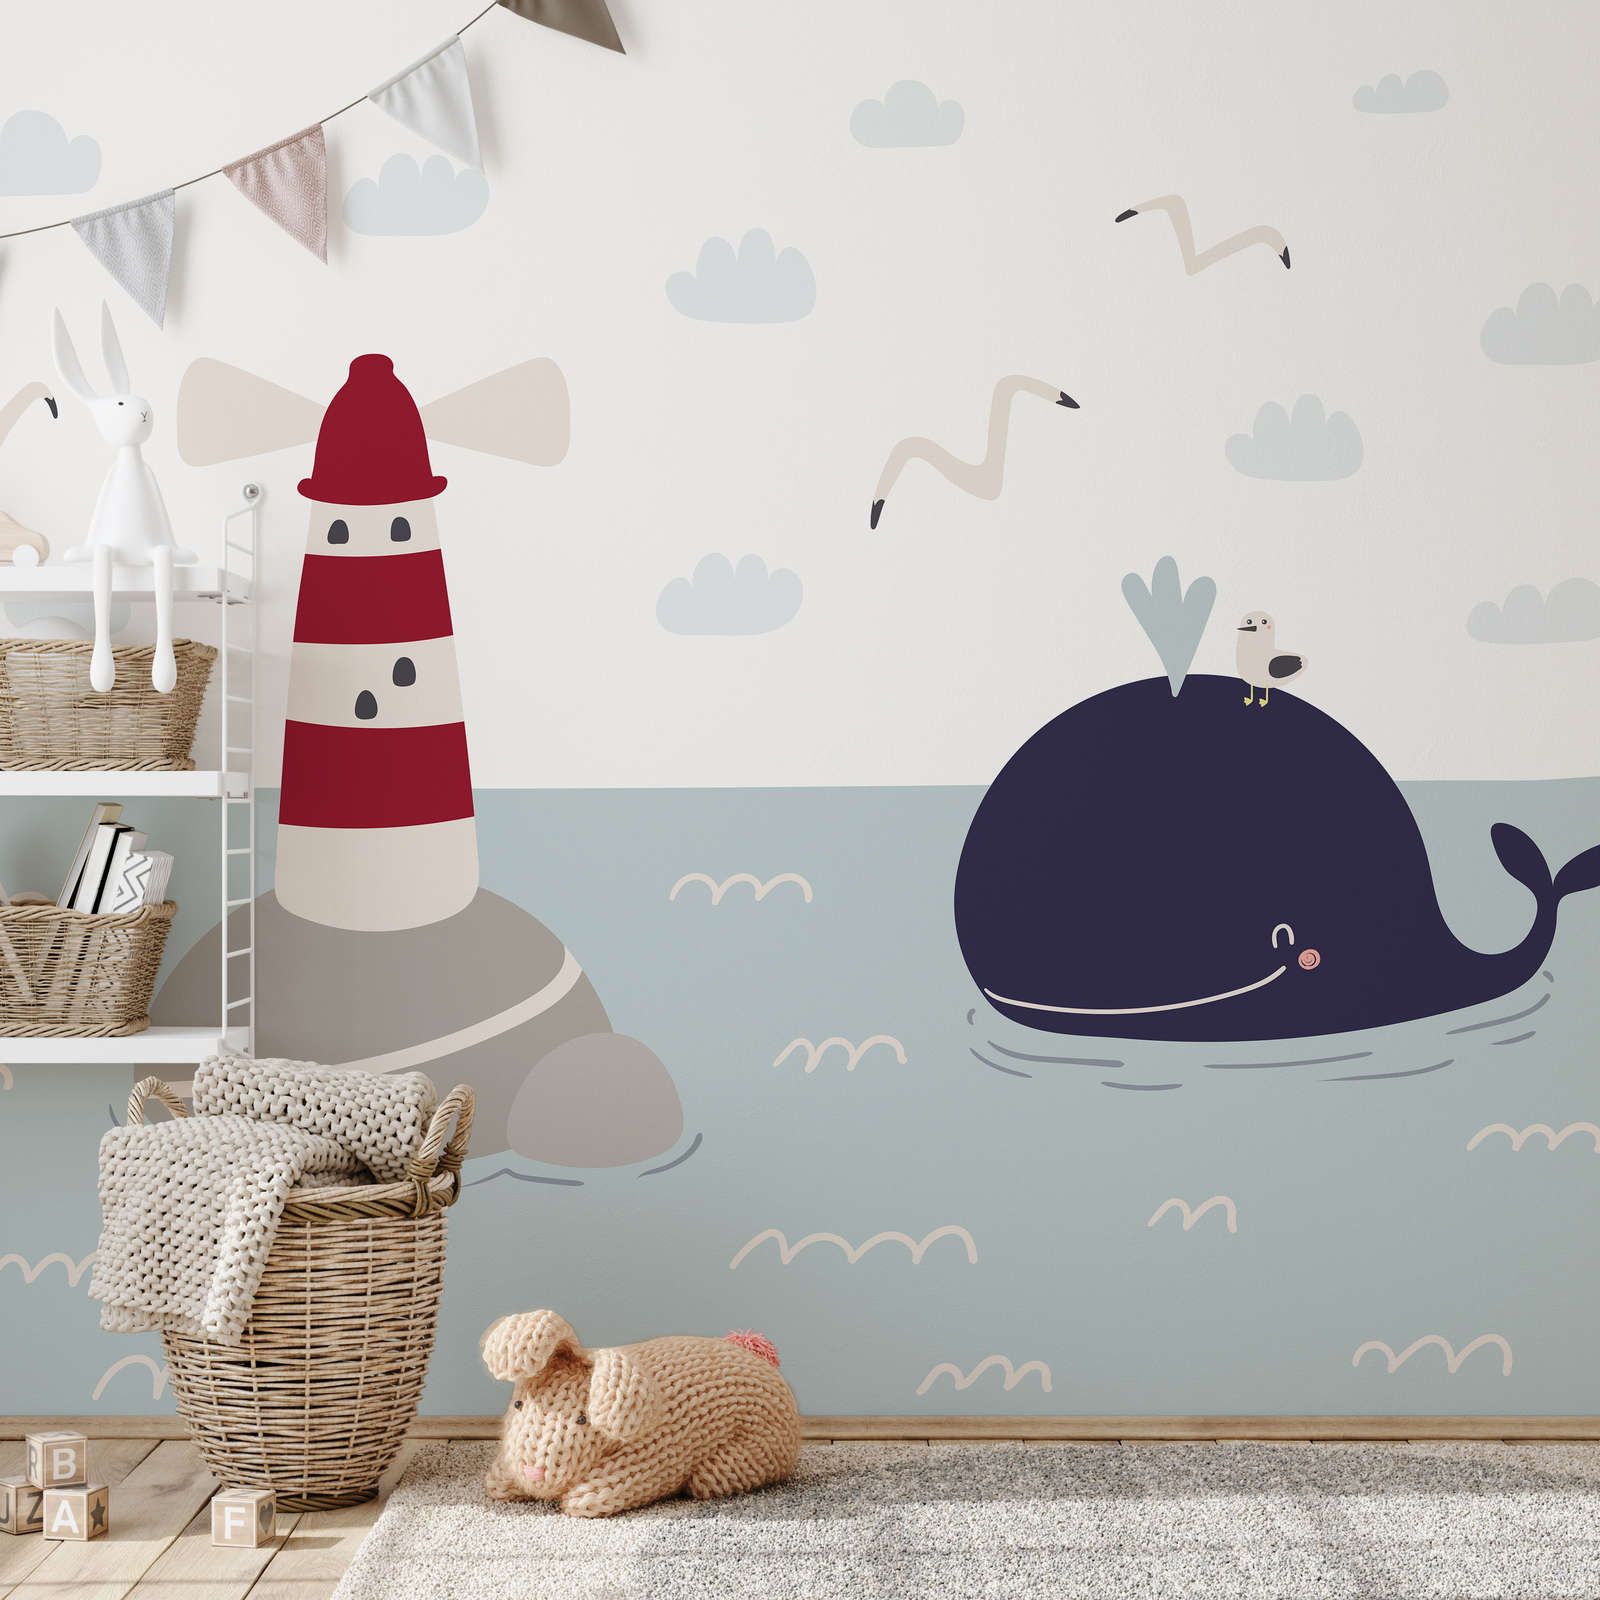             papiers peints à impression numérique pour chambre d'enfant avec phare et baleine - intissé structuré
        